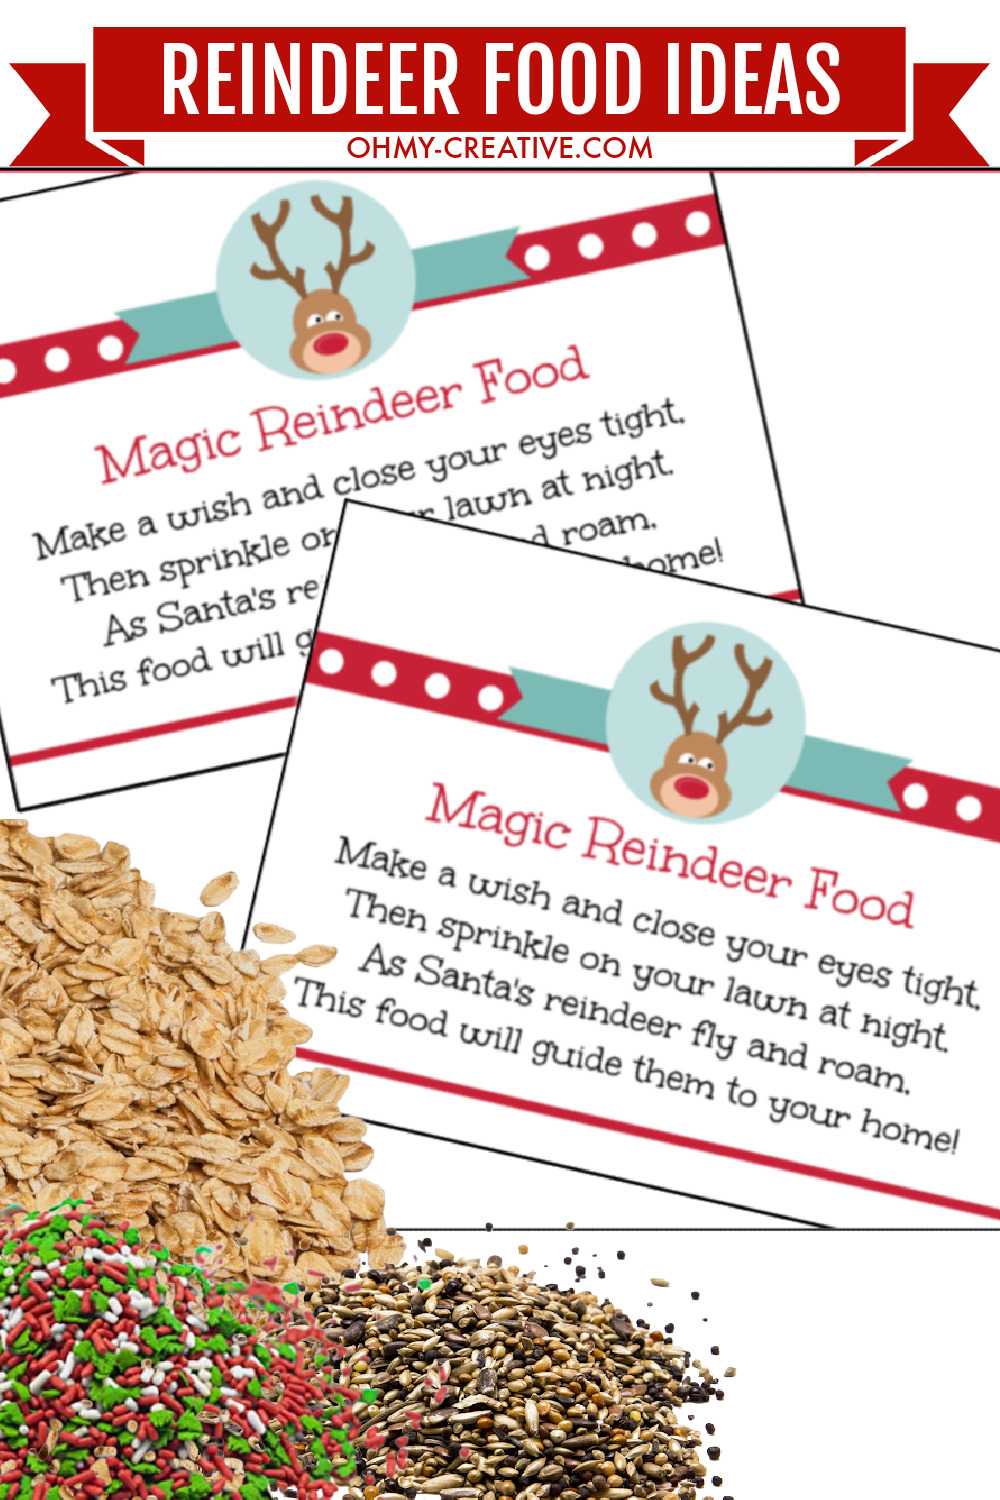 Magic reindeer food ingredients and reindeer food poem printable tags.